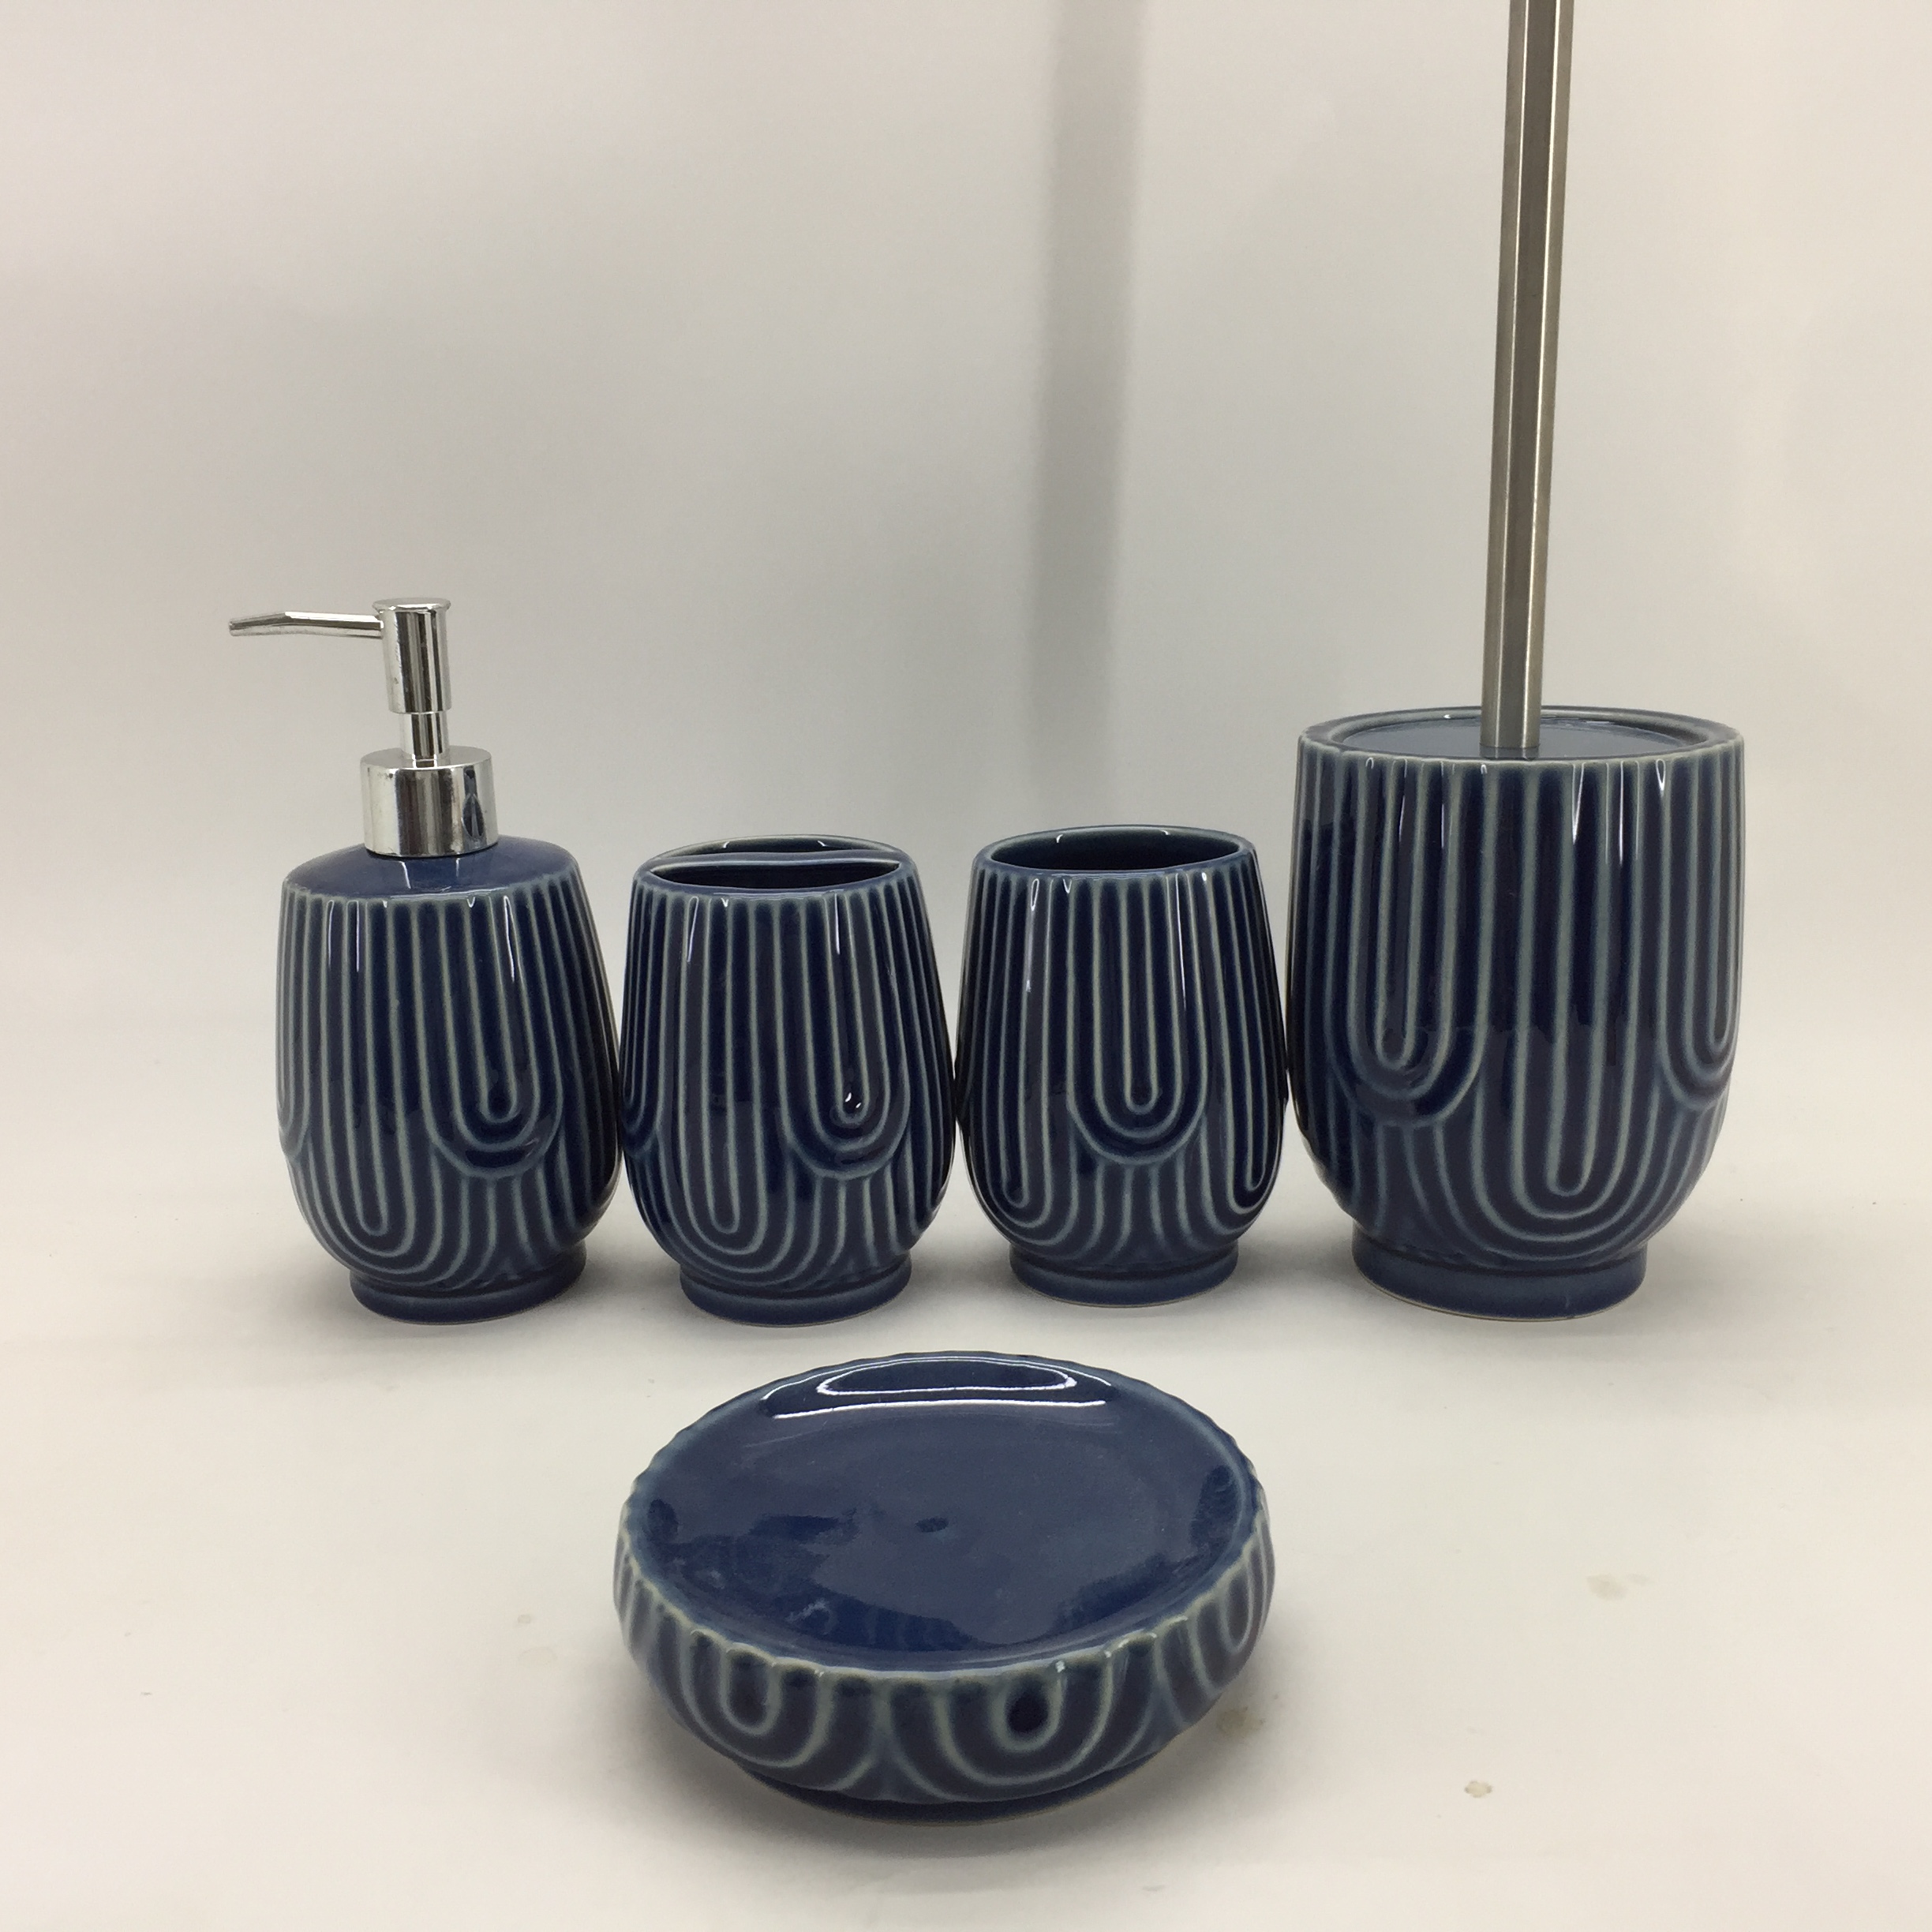 Cheap Unique Patterned Ceramic Bathroom Set